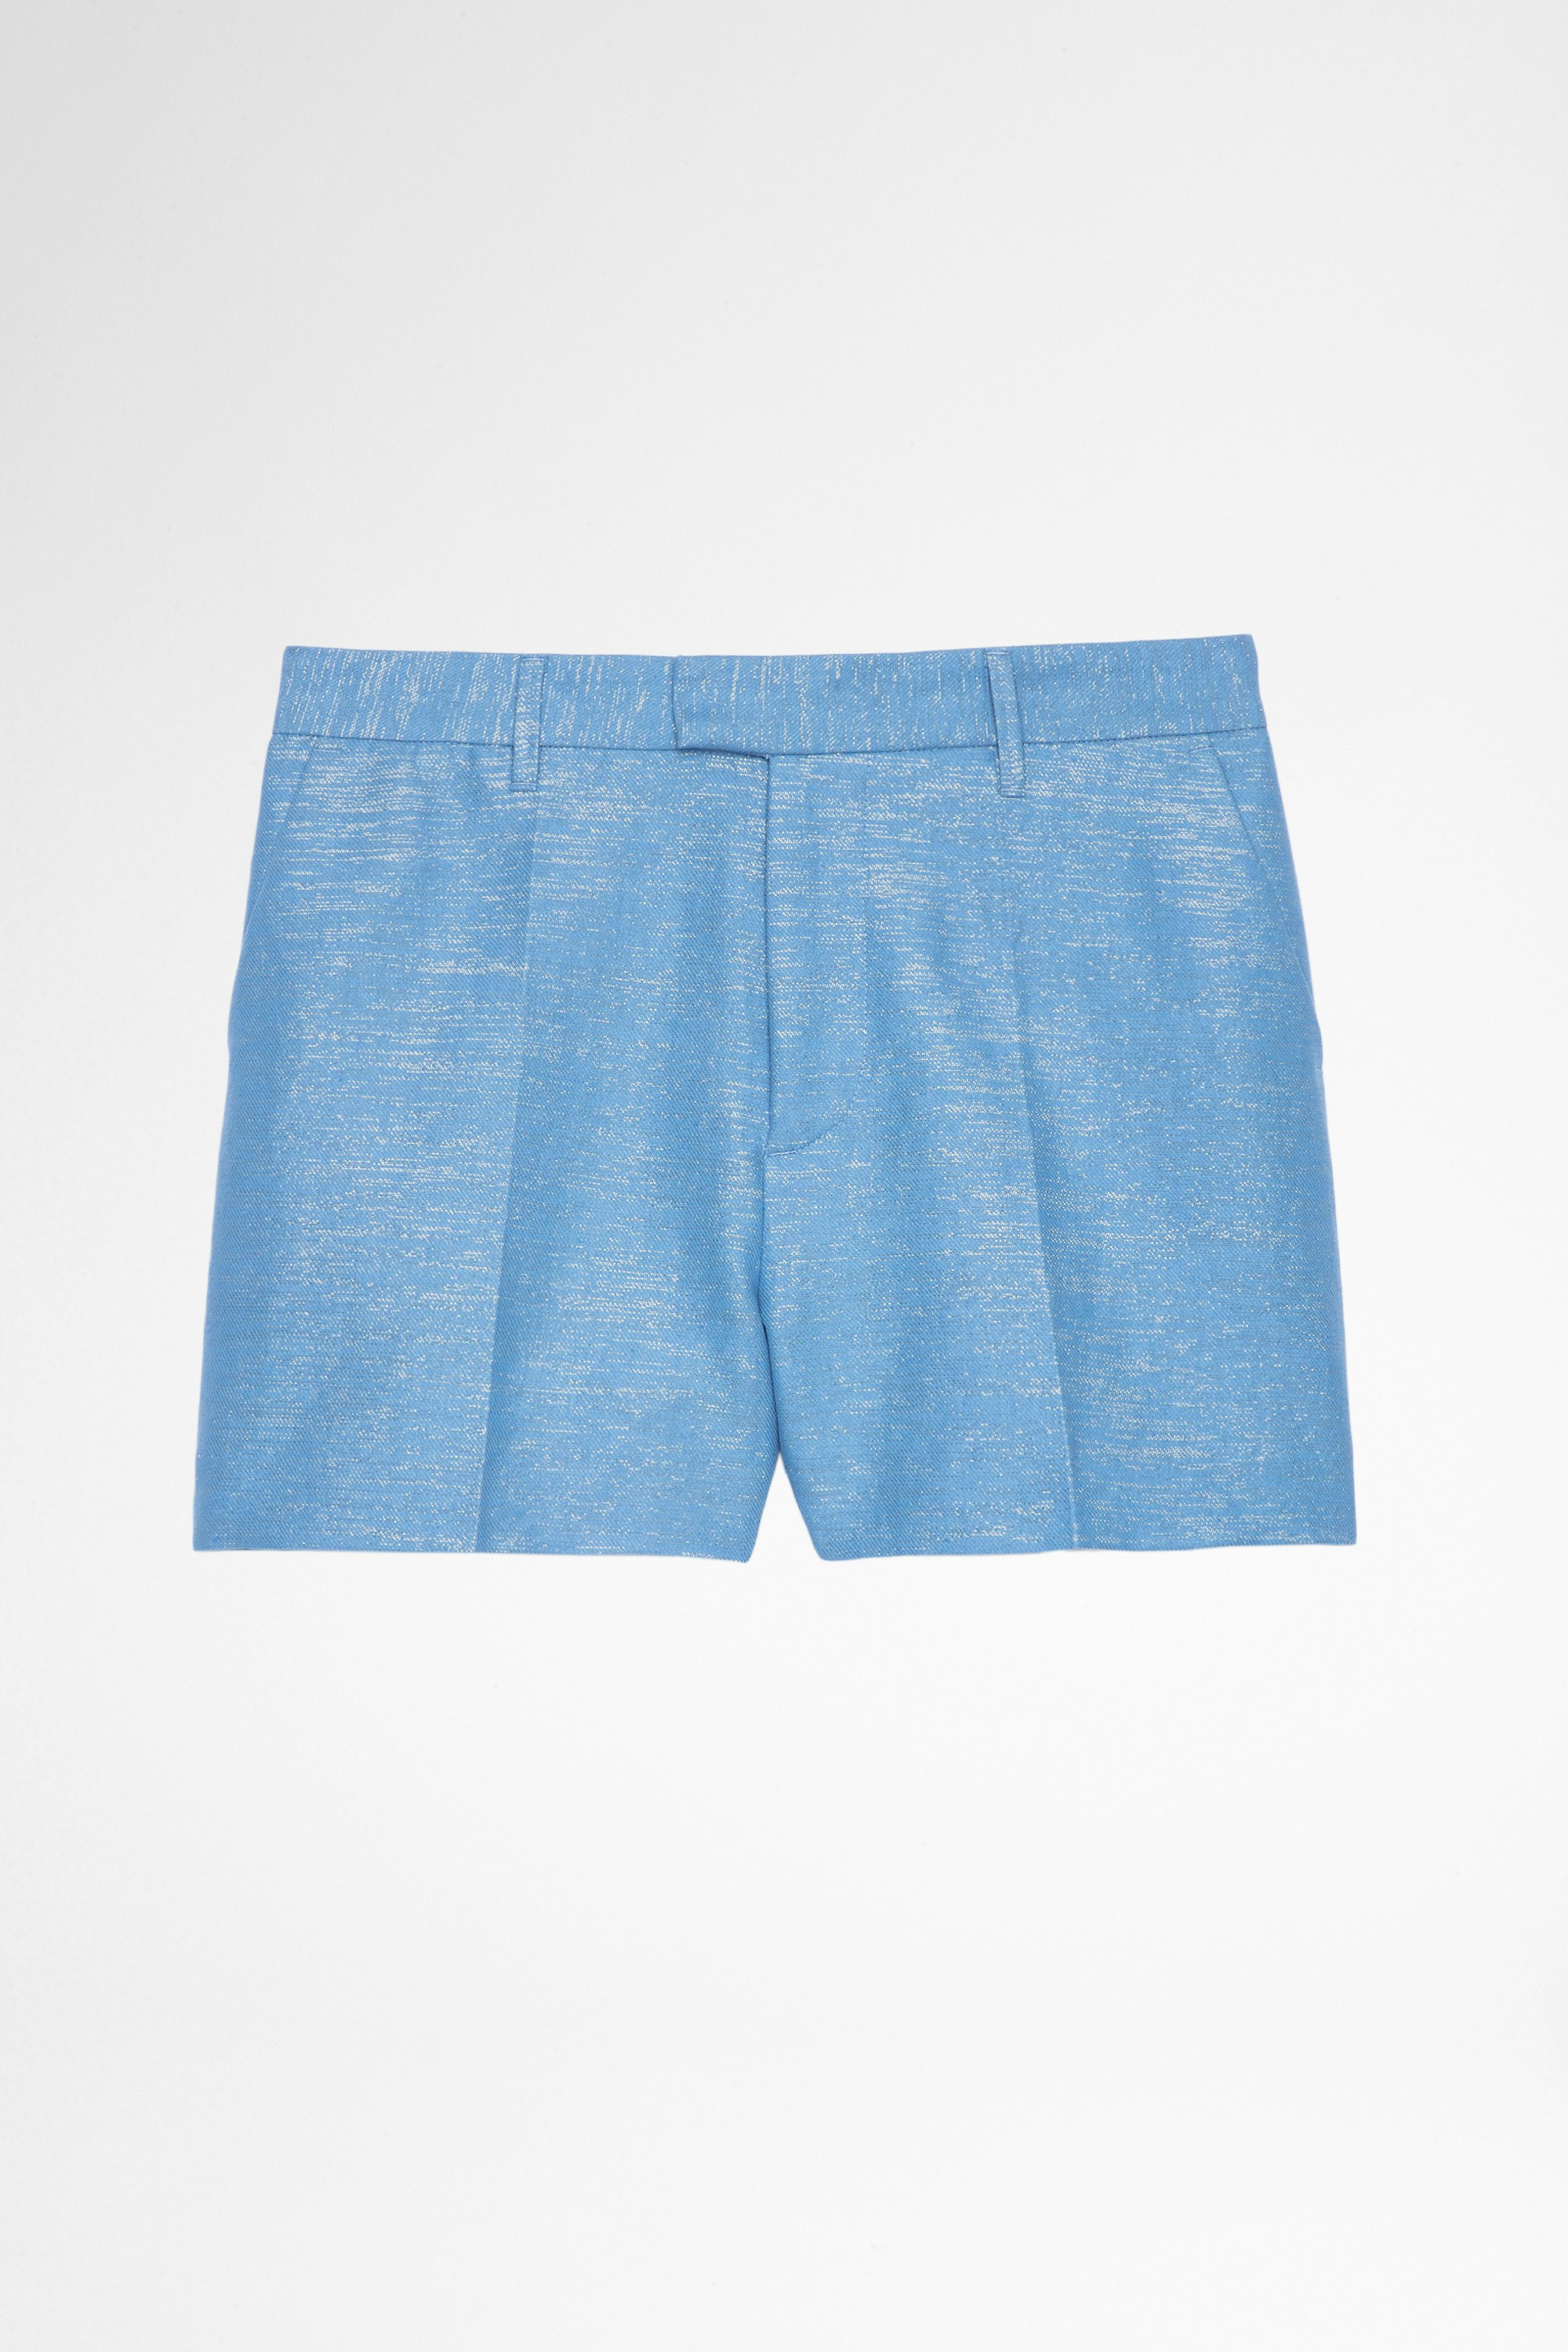 Shorts Please Shorts aus Leinen und Baumwolle in glänzendem Himmelblau für Damen